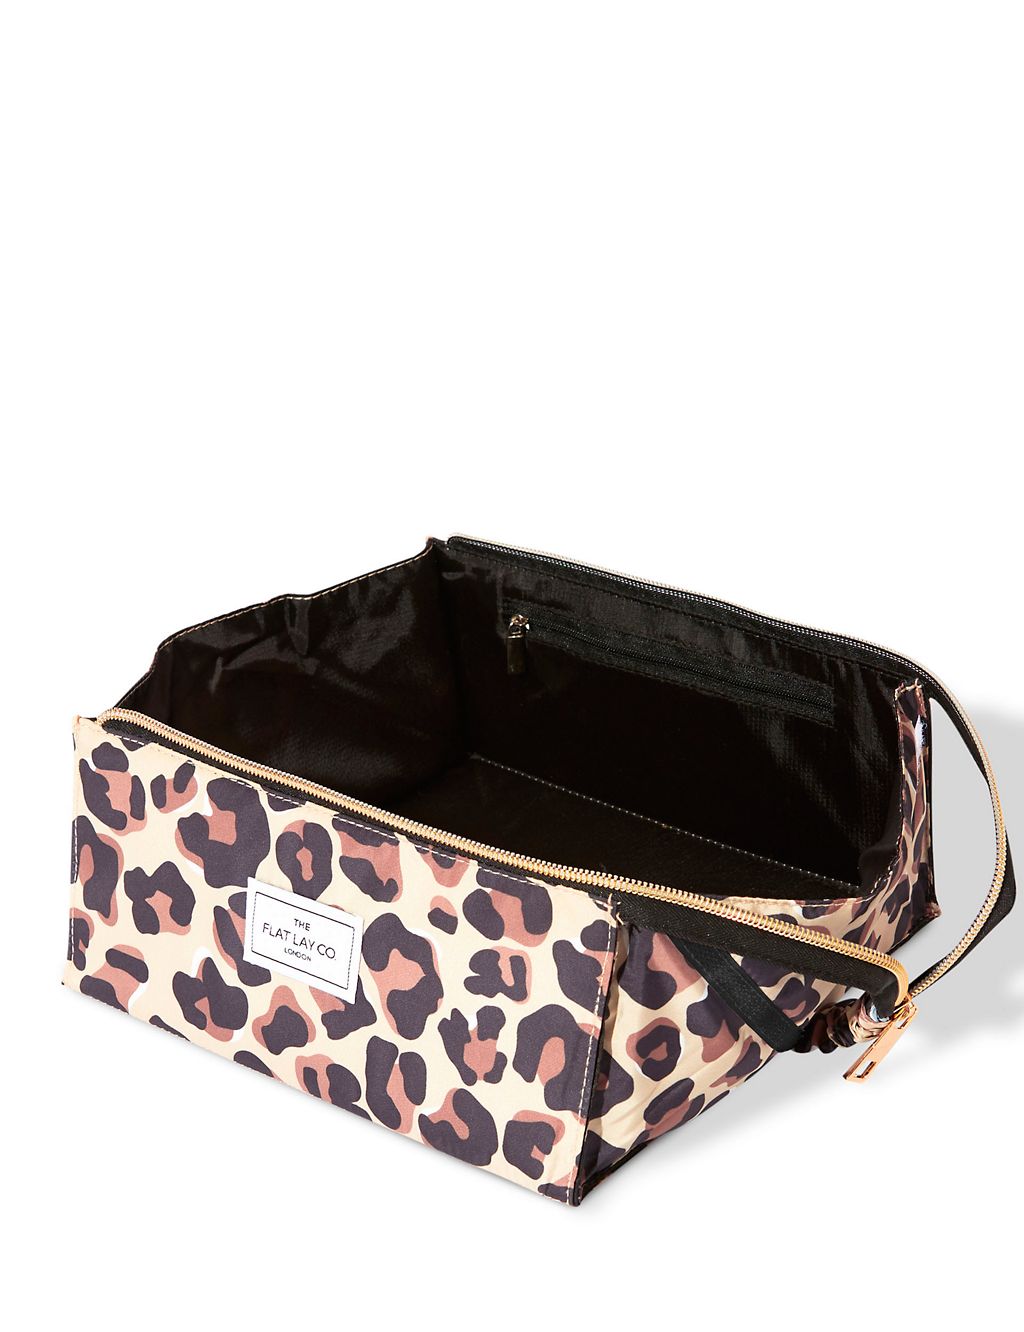 Makeup Box Bag In Leopard Print 2 of 5